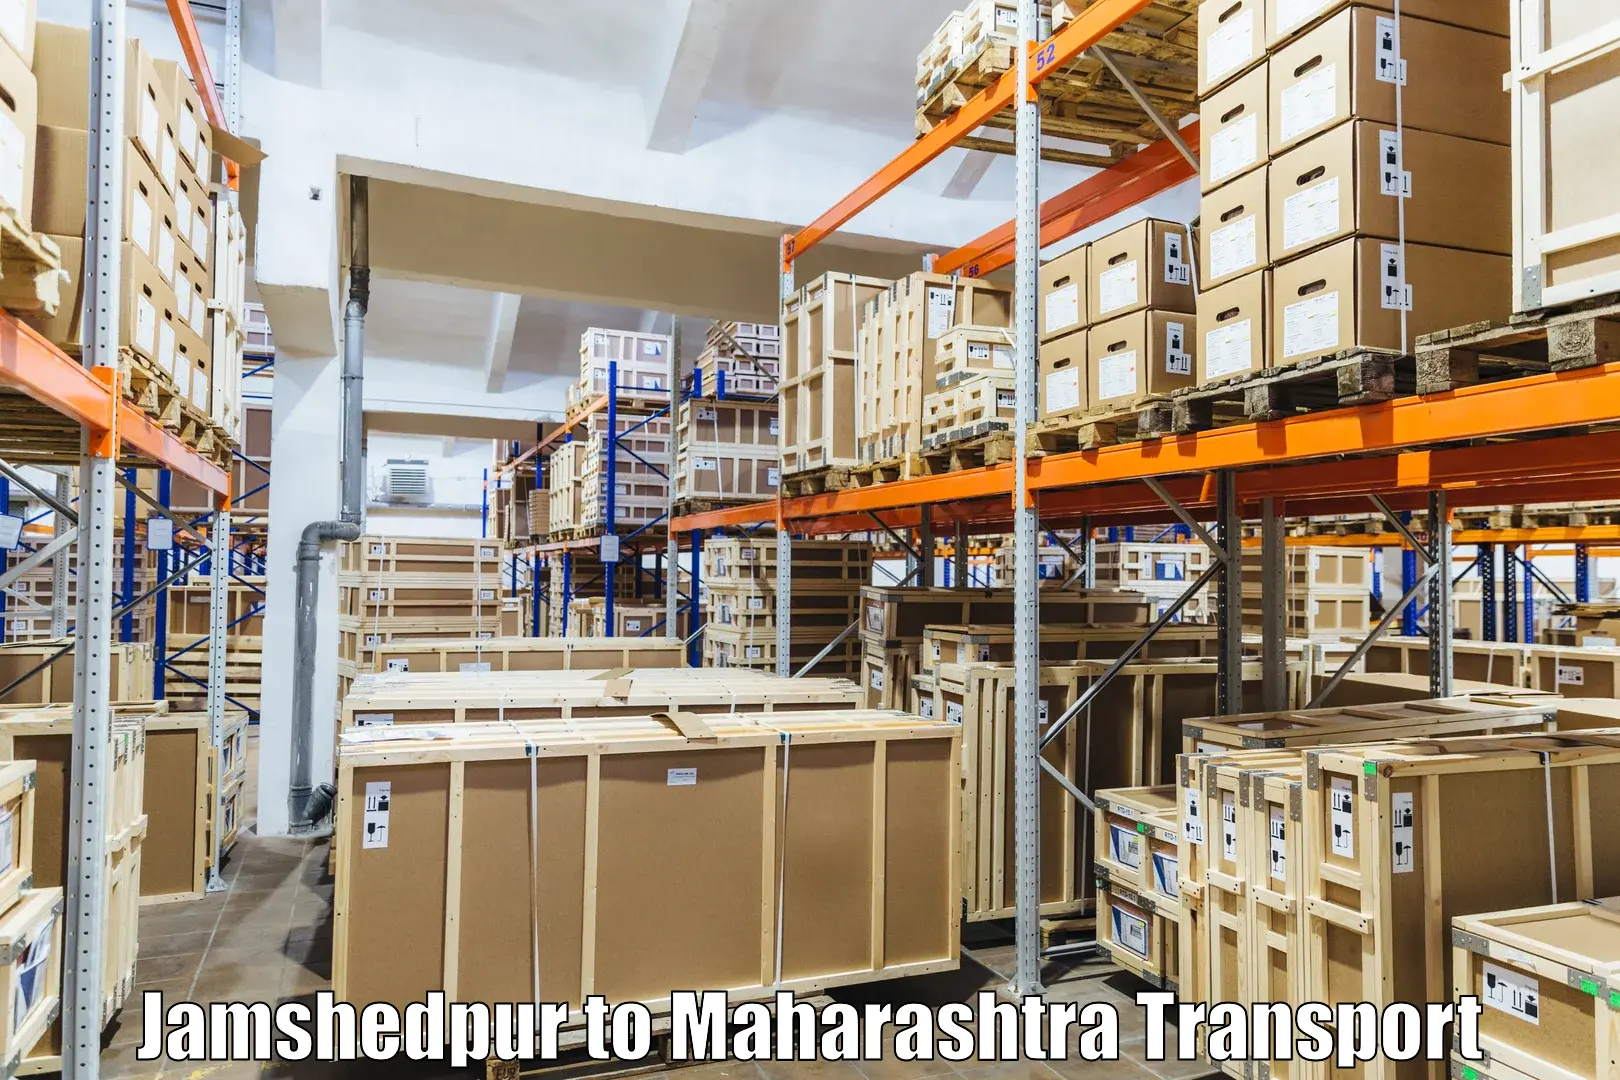 Furniture transport service Jamshedpur to Jafrabad Jalna